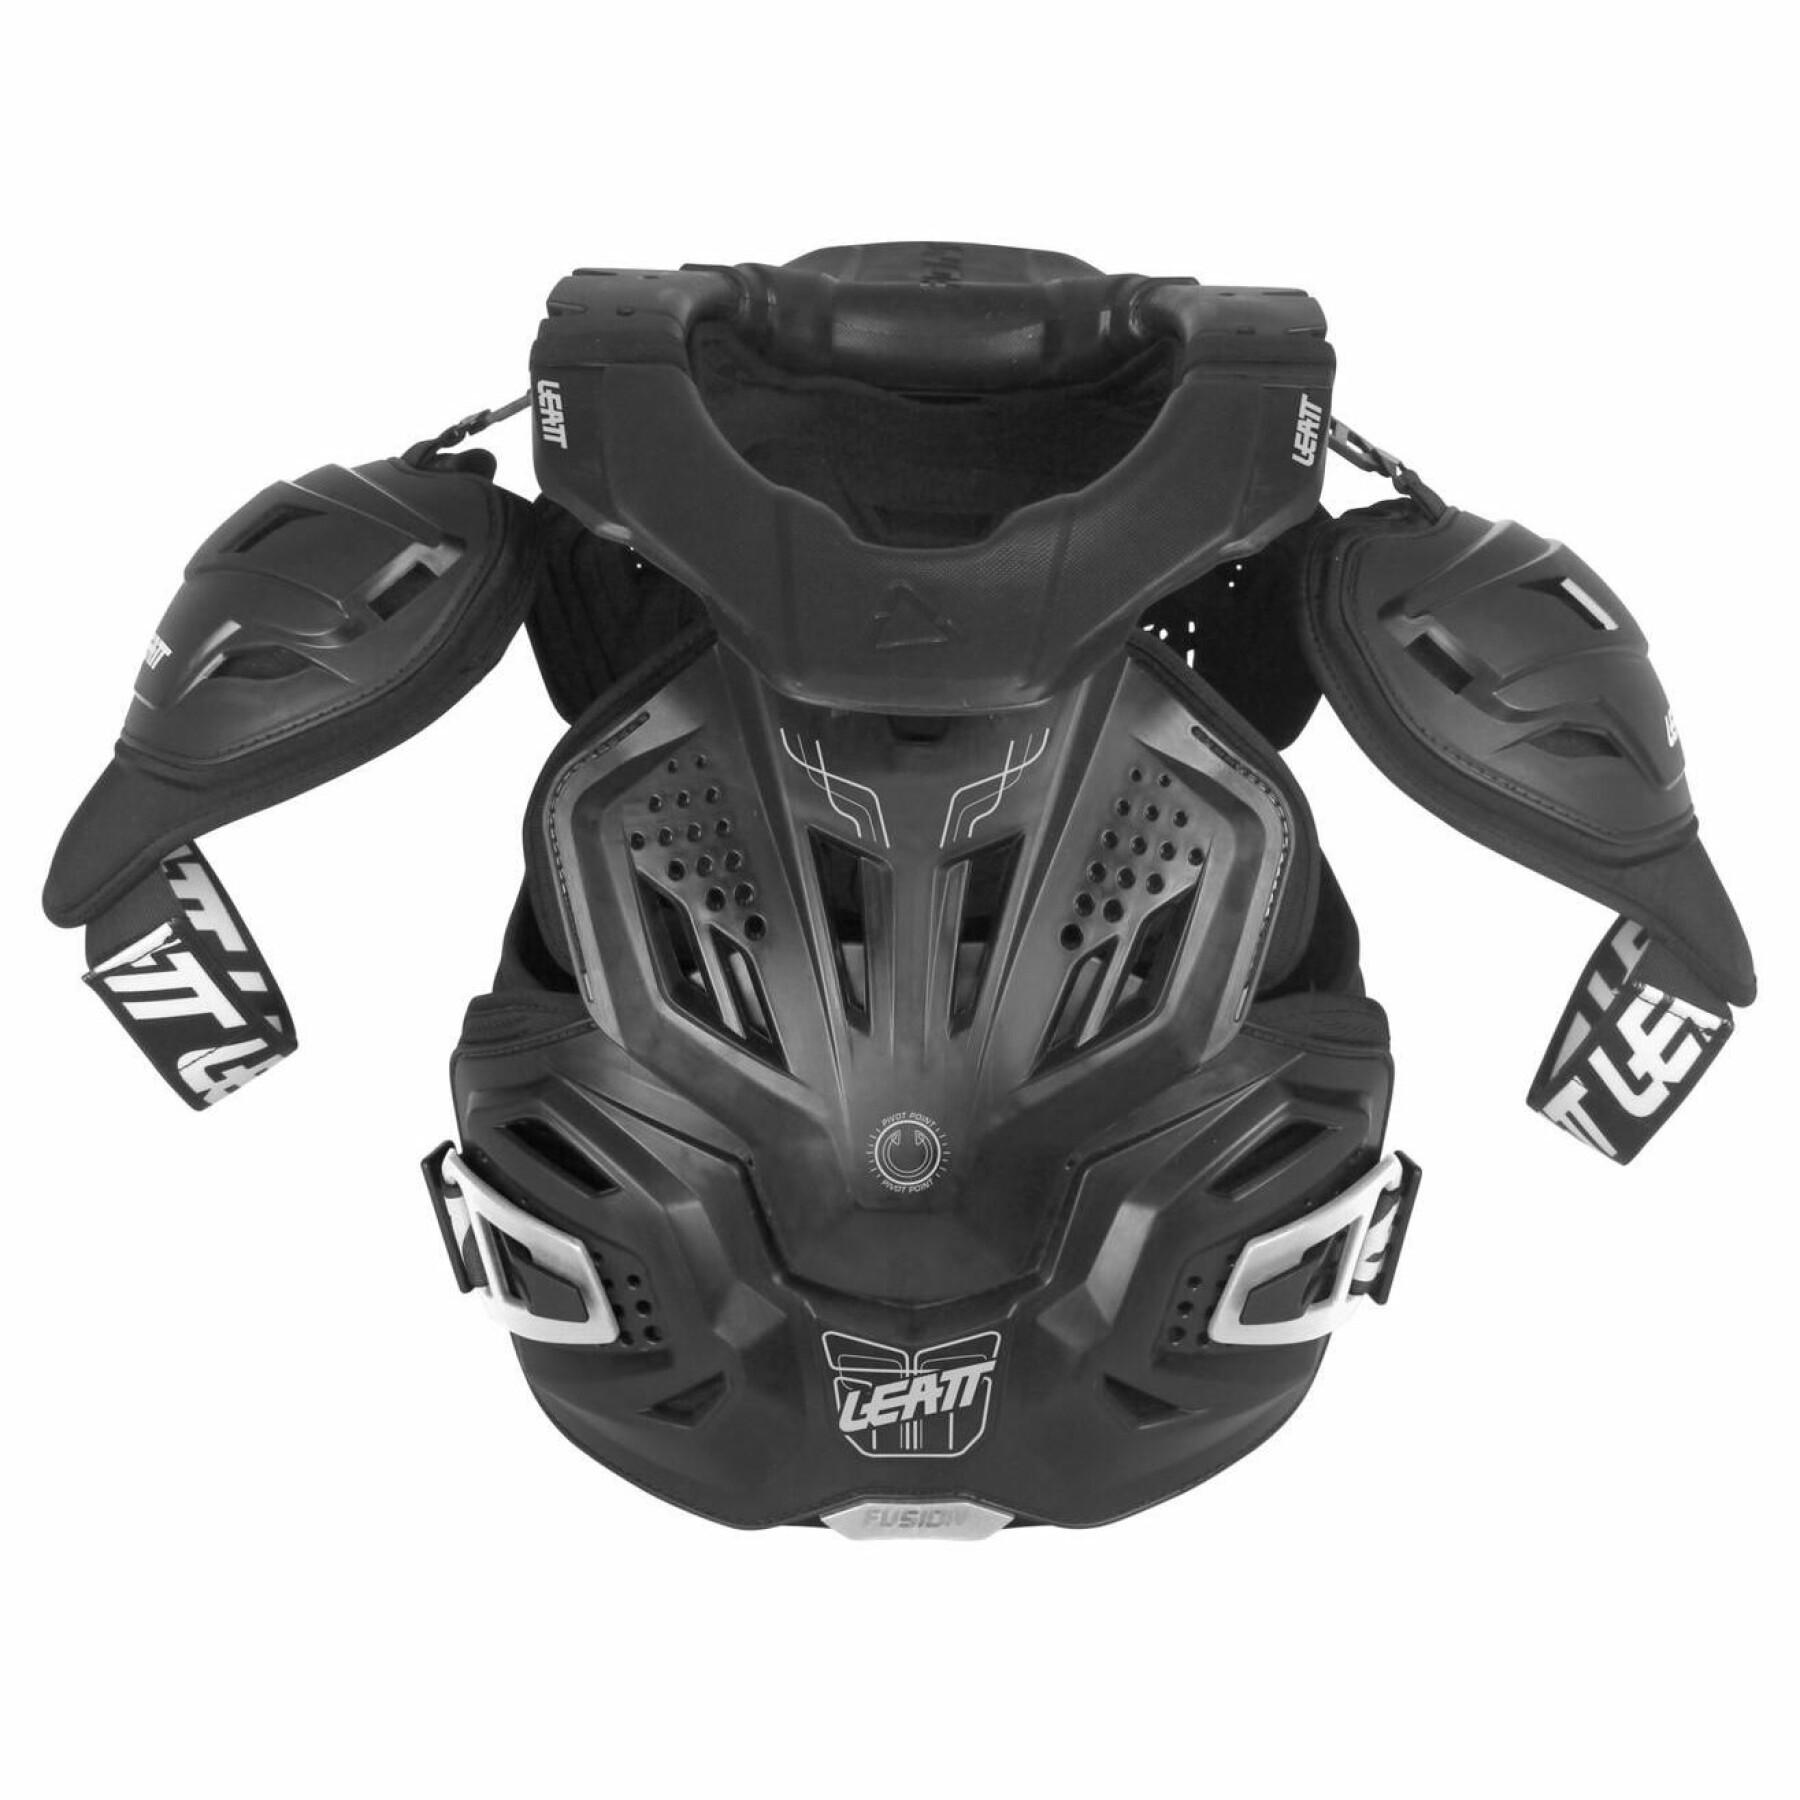 Placa frontal de la moto Leatt 3.0